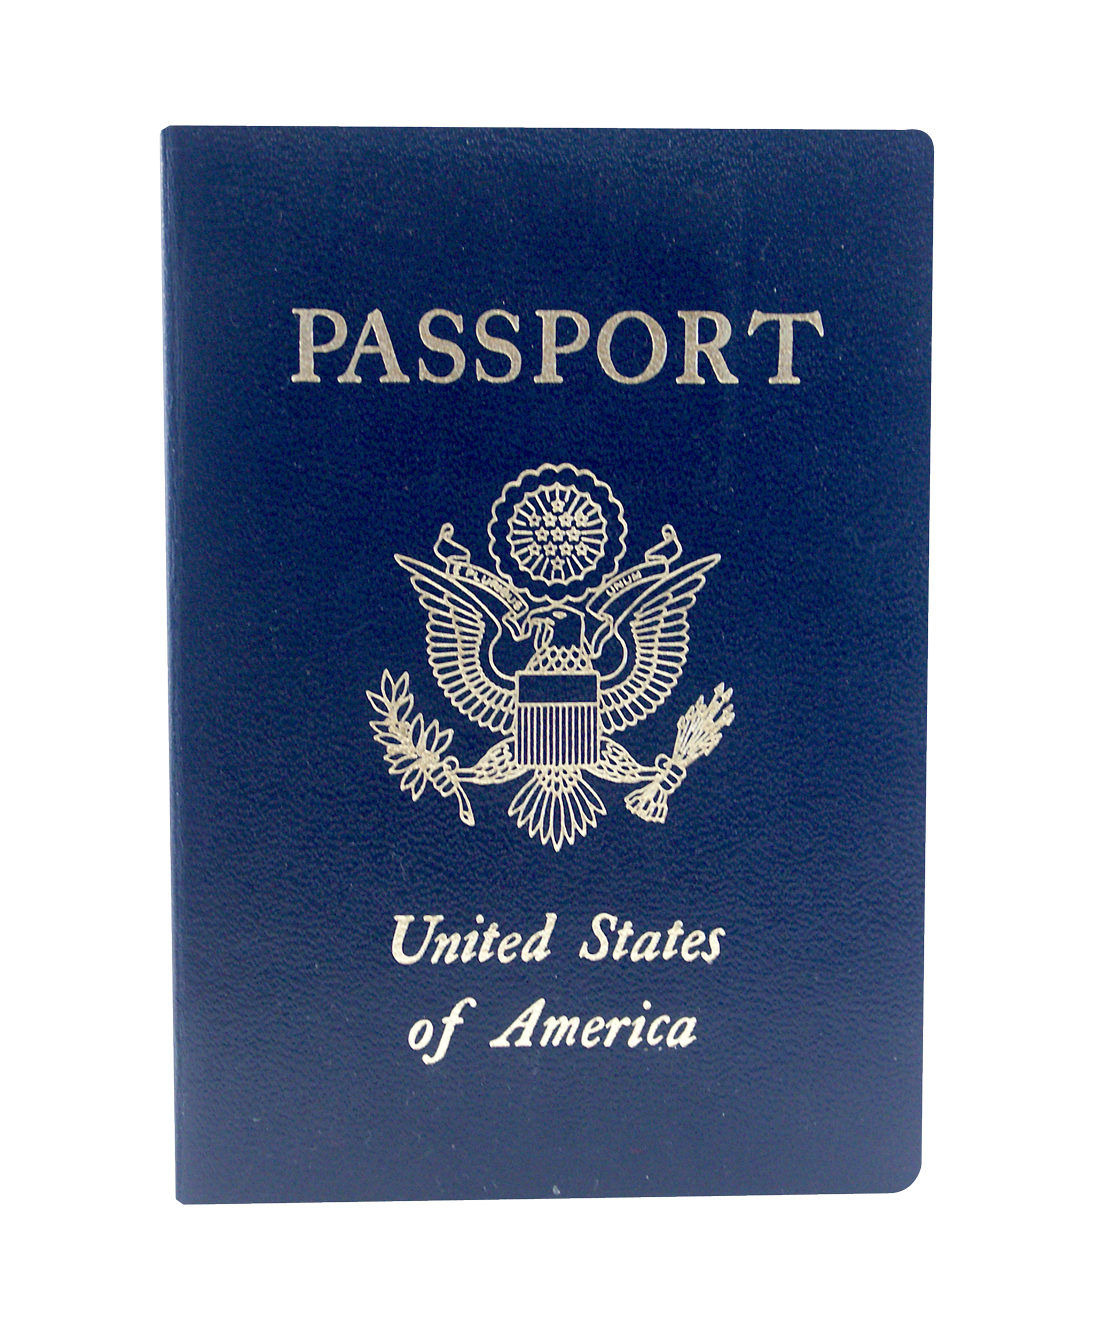 Passport PNG Image File